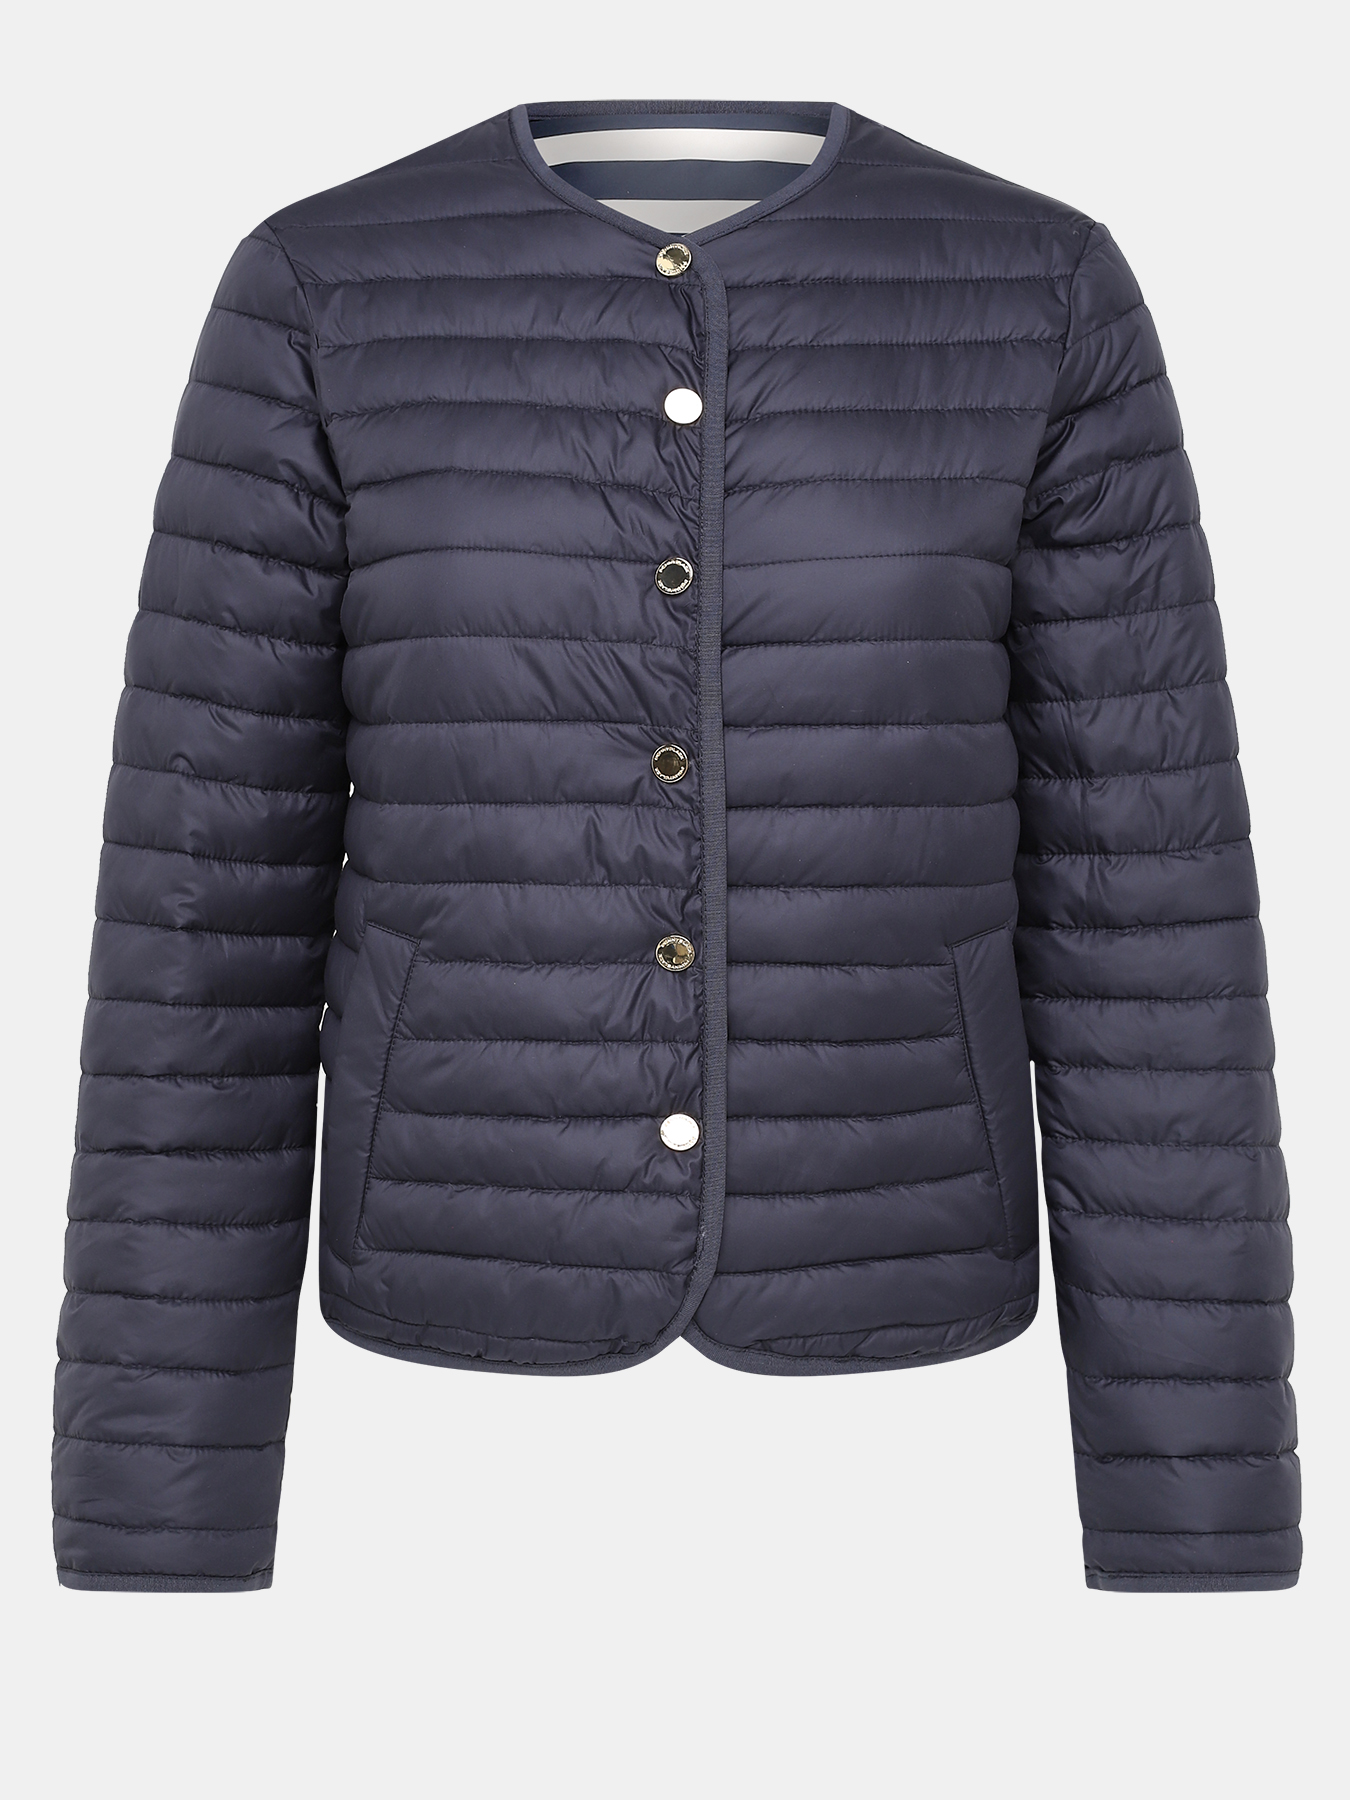 Двустороняя куртка Pennyblack 408451-022, цвет мультиколор, размер 44 - фото 6